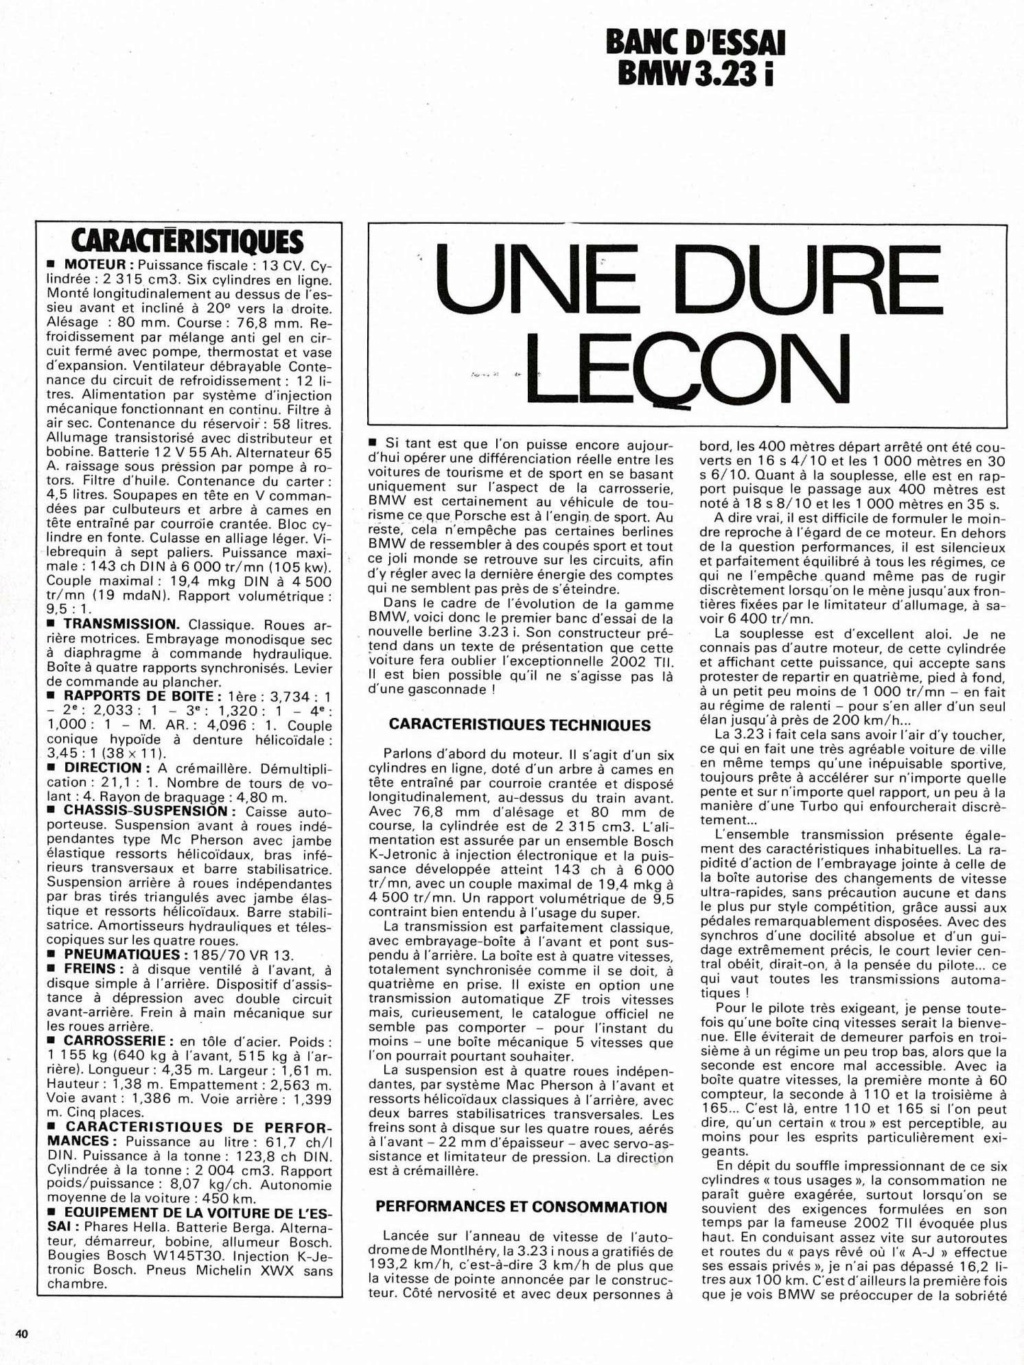 BANC D'ESSAI L'Auto-Journal 1978: 323i Maison11